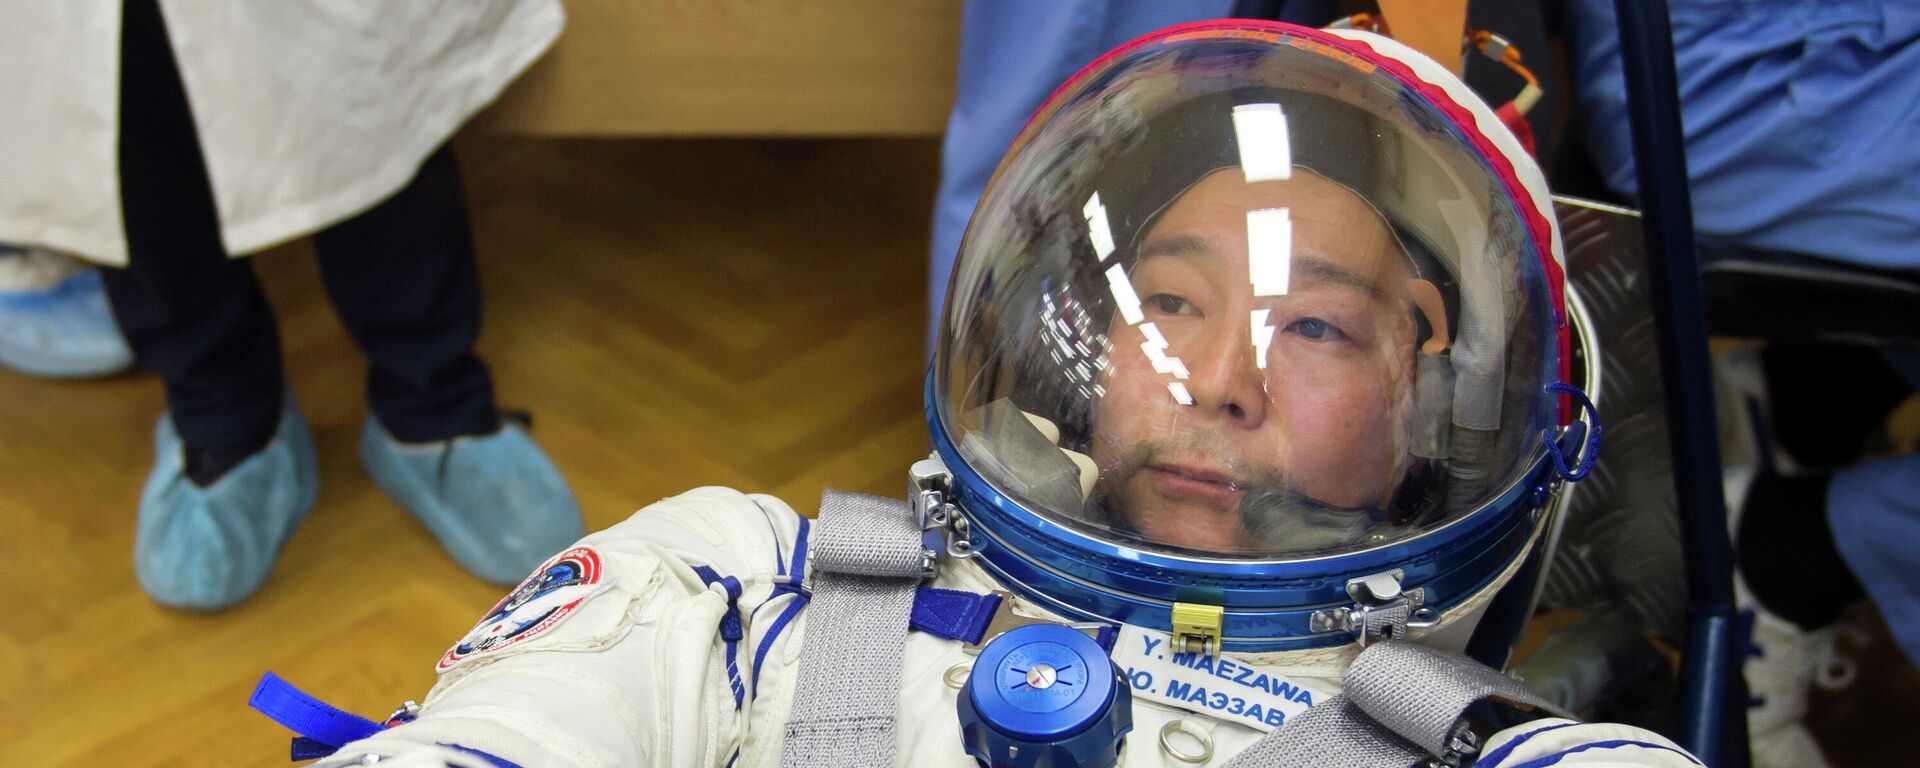 El multimillonario japonés Yusaku Maezawa se prepara para su viaje espacial - Sputnik Mundo, 1920, 29.11.2021